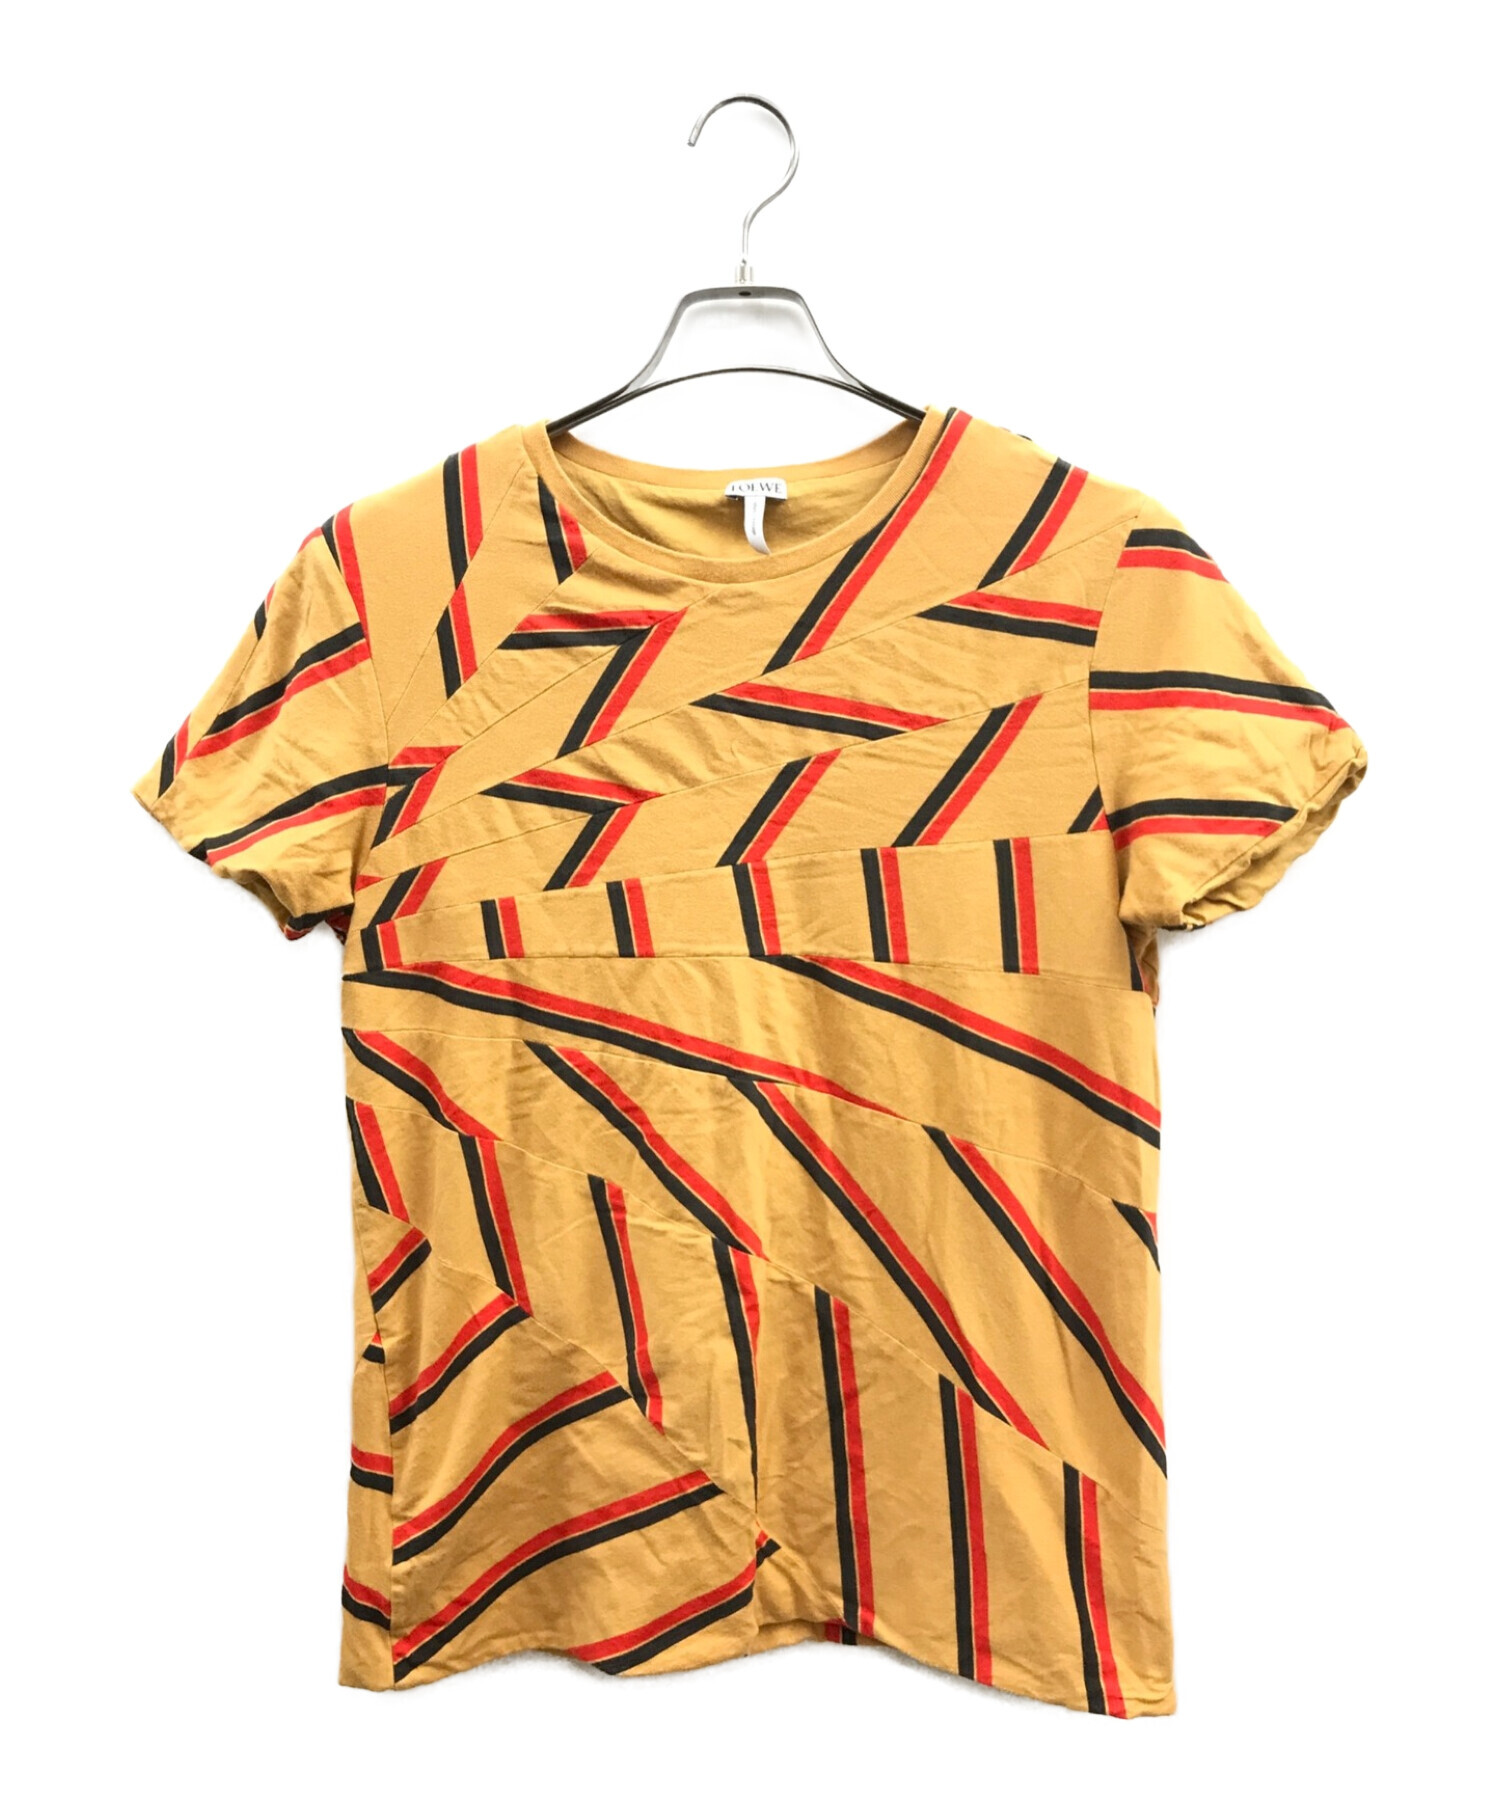 LOEWE (ロエベ) ボーダークレイジーパターンTシャツ ブラウン サイズ:サイズ表記無し